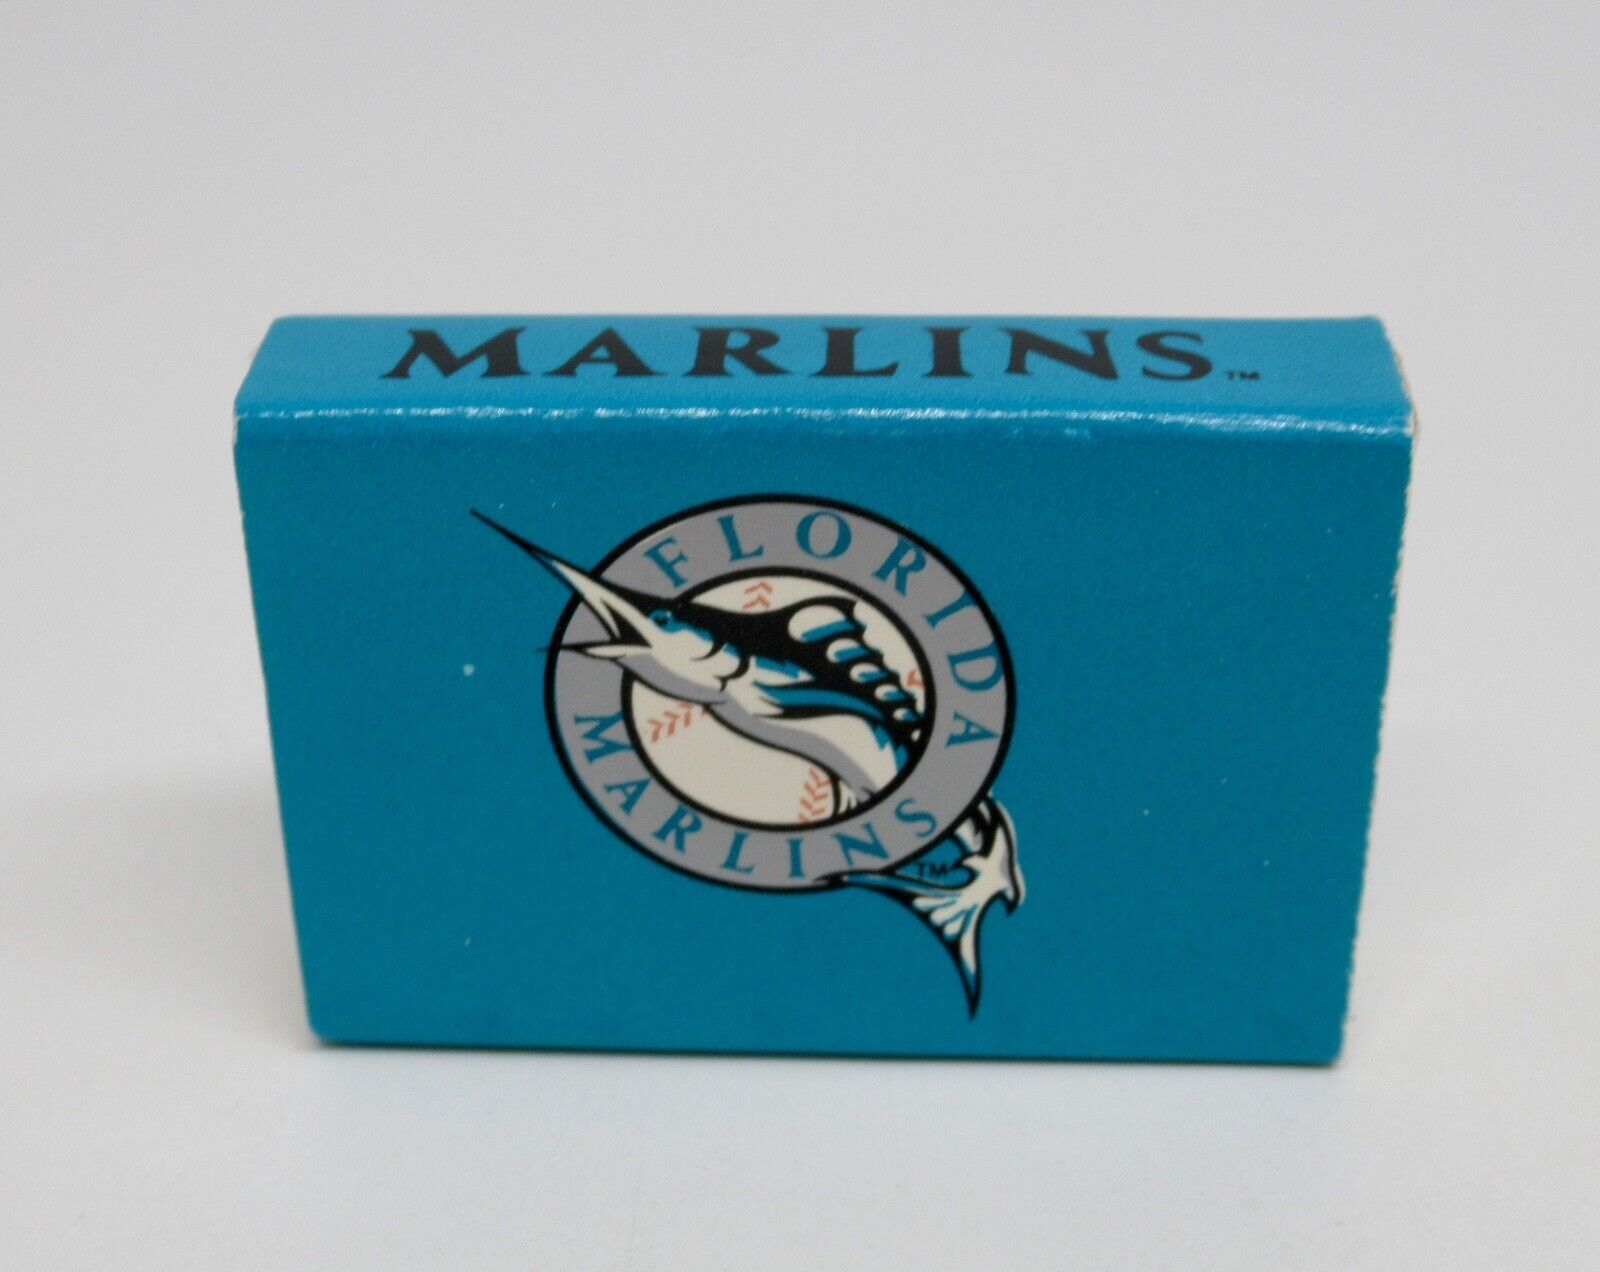 Florida Marlins Major League Baseball Team FULL Matchbook / Matchbox